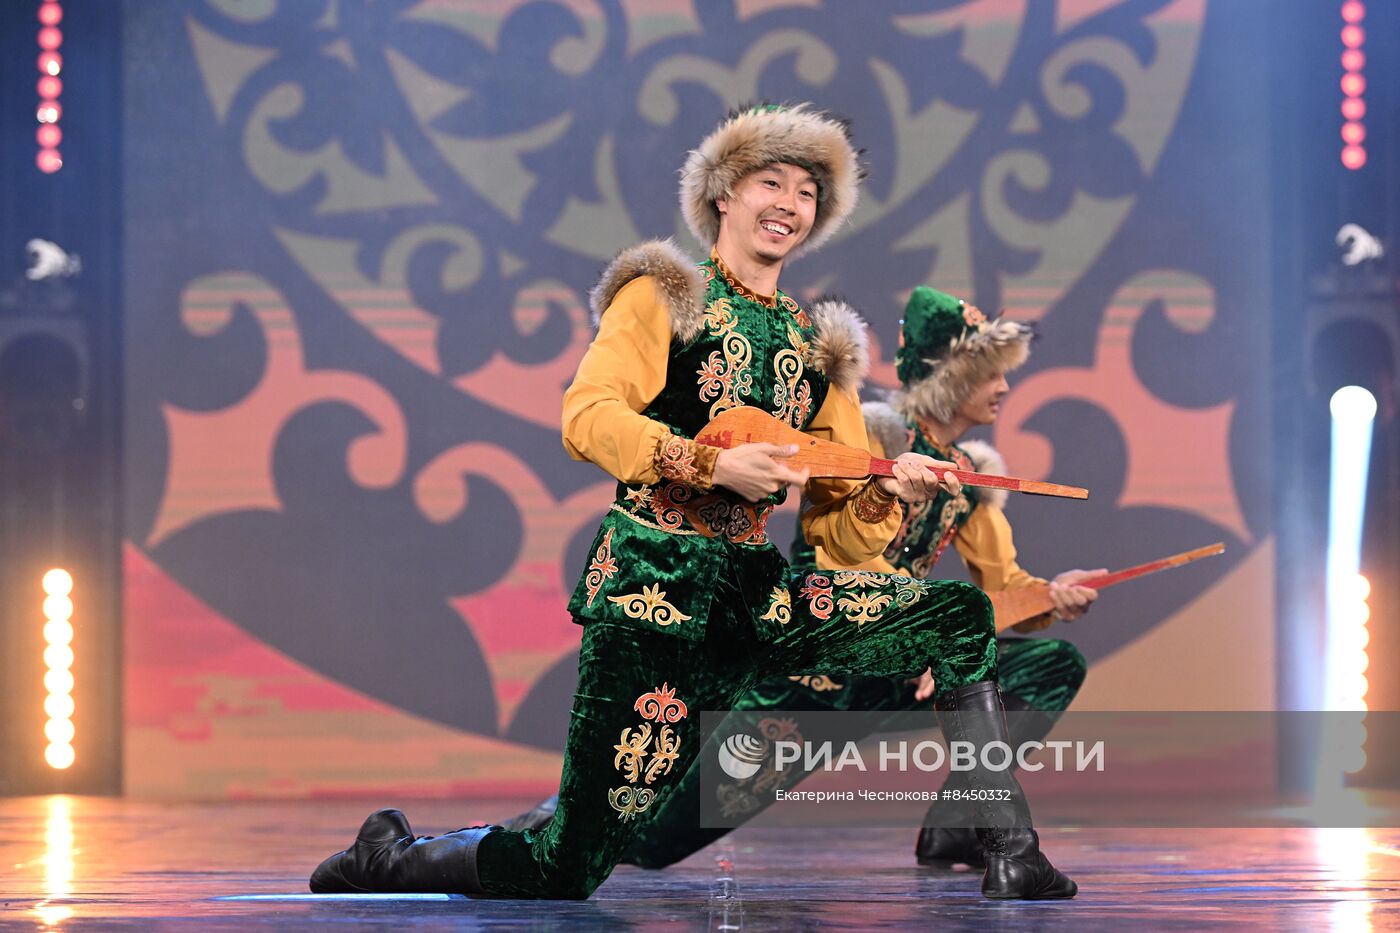 Фестиваль культуры и искусств народов Евразии в рамках Евразийского экономического союза 